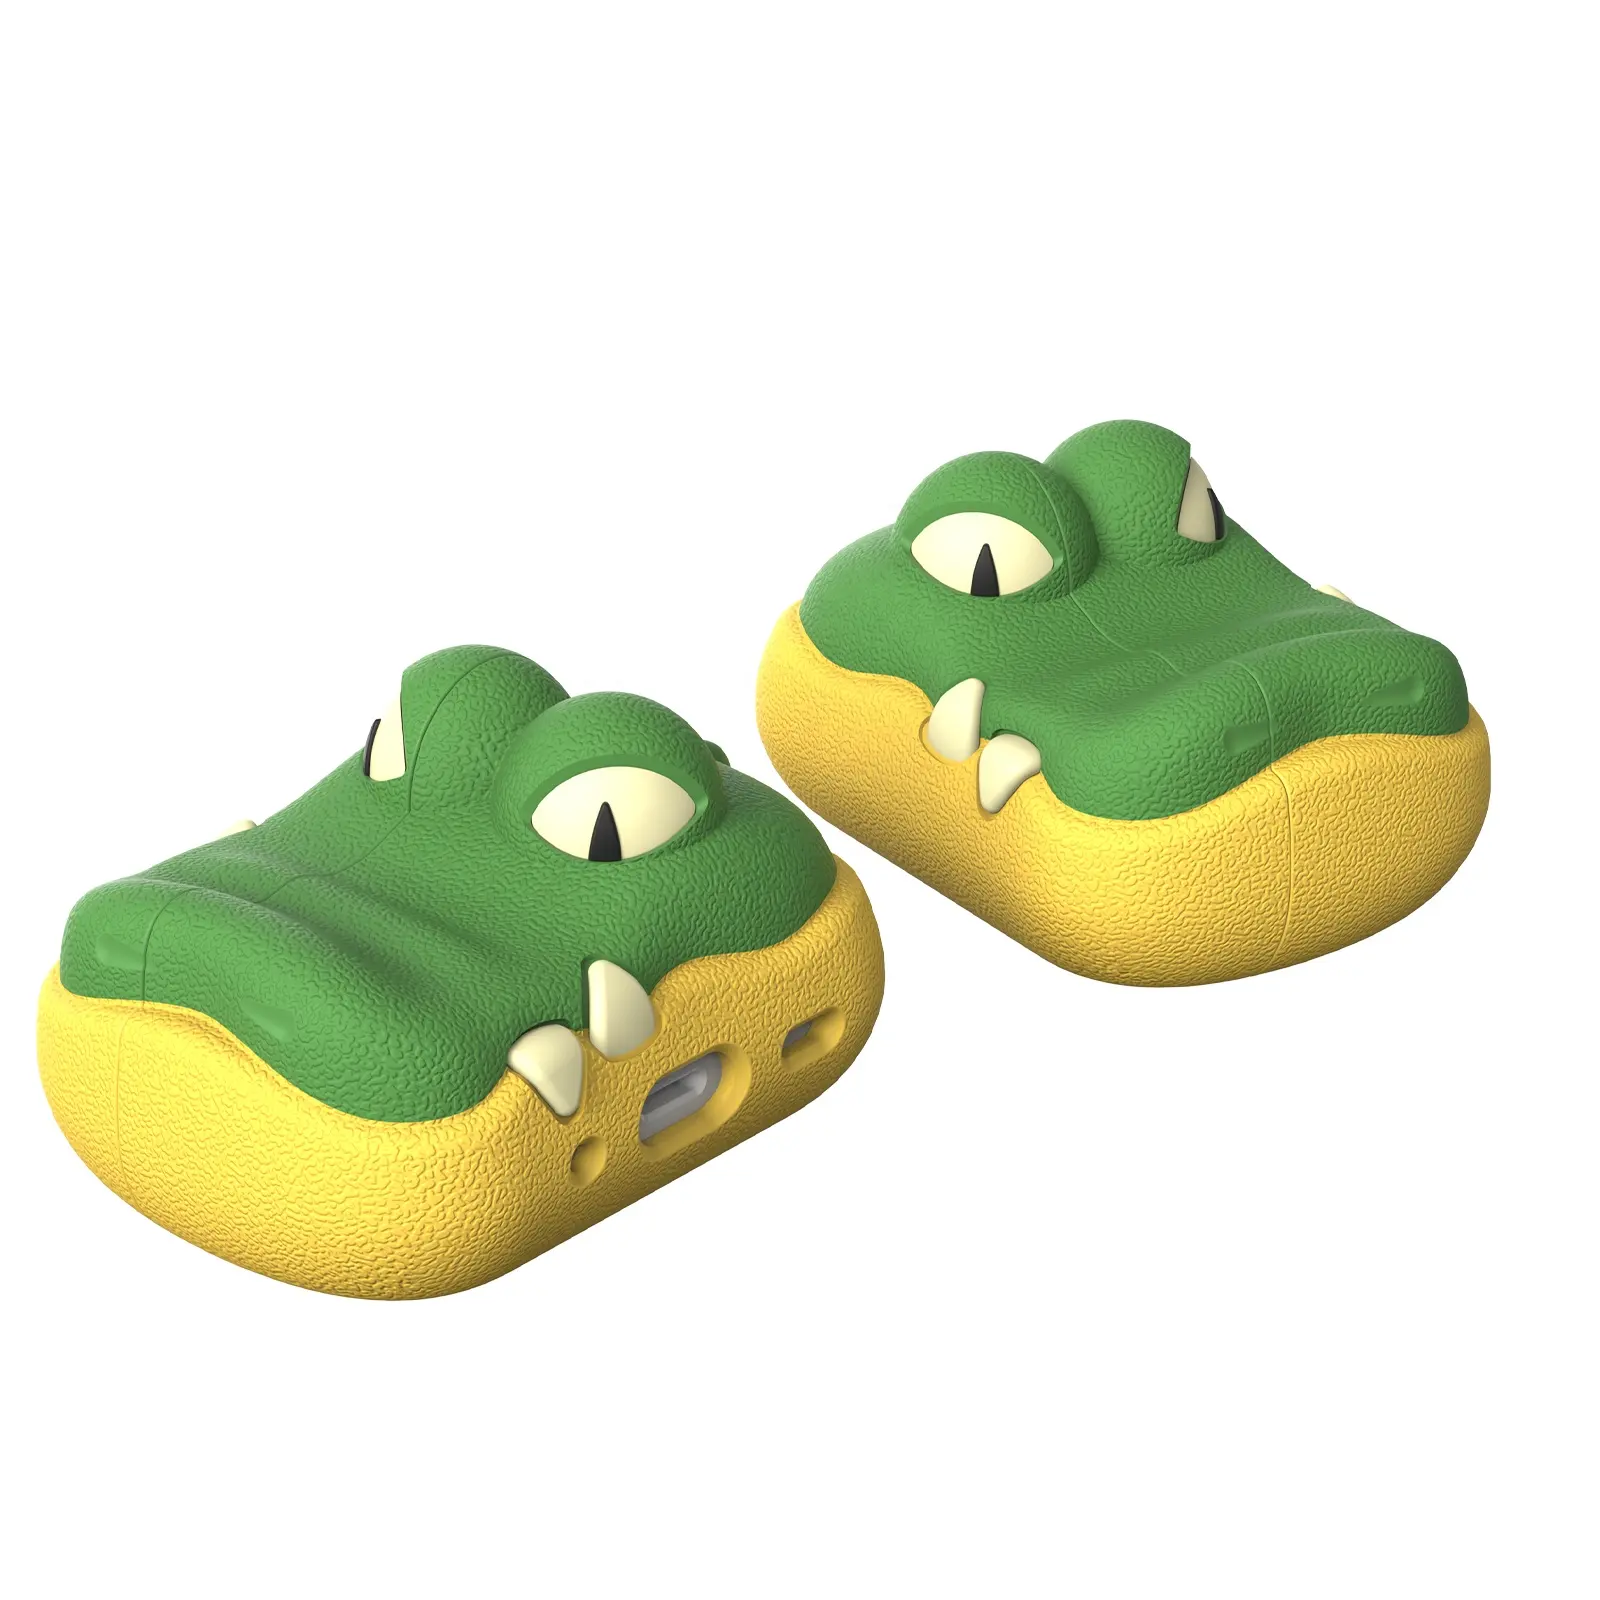 Nouveaux étuis de dessin animé Crocodile pour Airpods Pro Series, housse de protection en Silicone Anti-poussière pour Airpods Pro 2